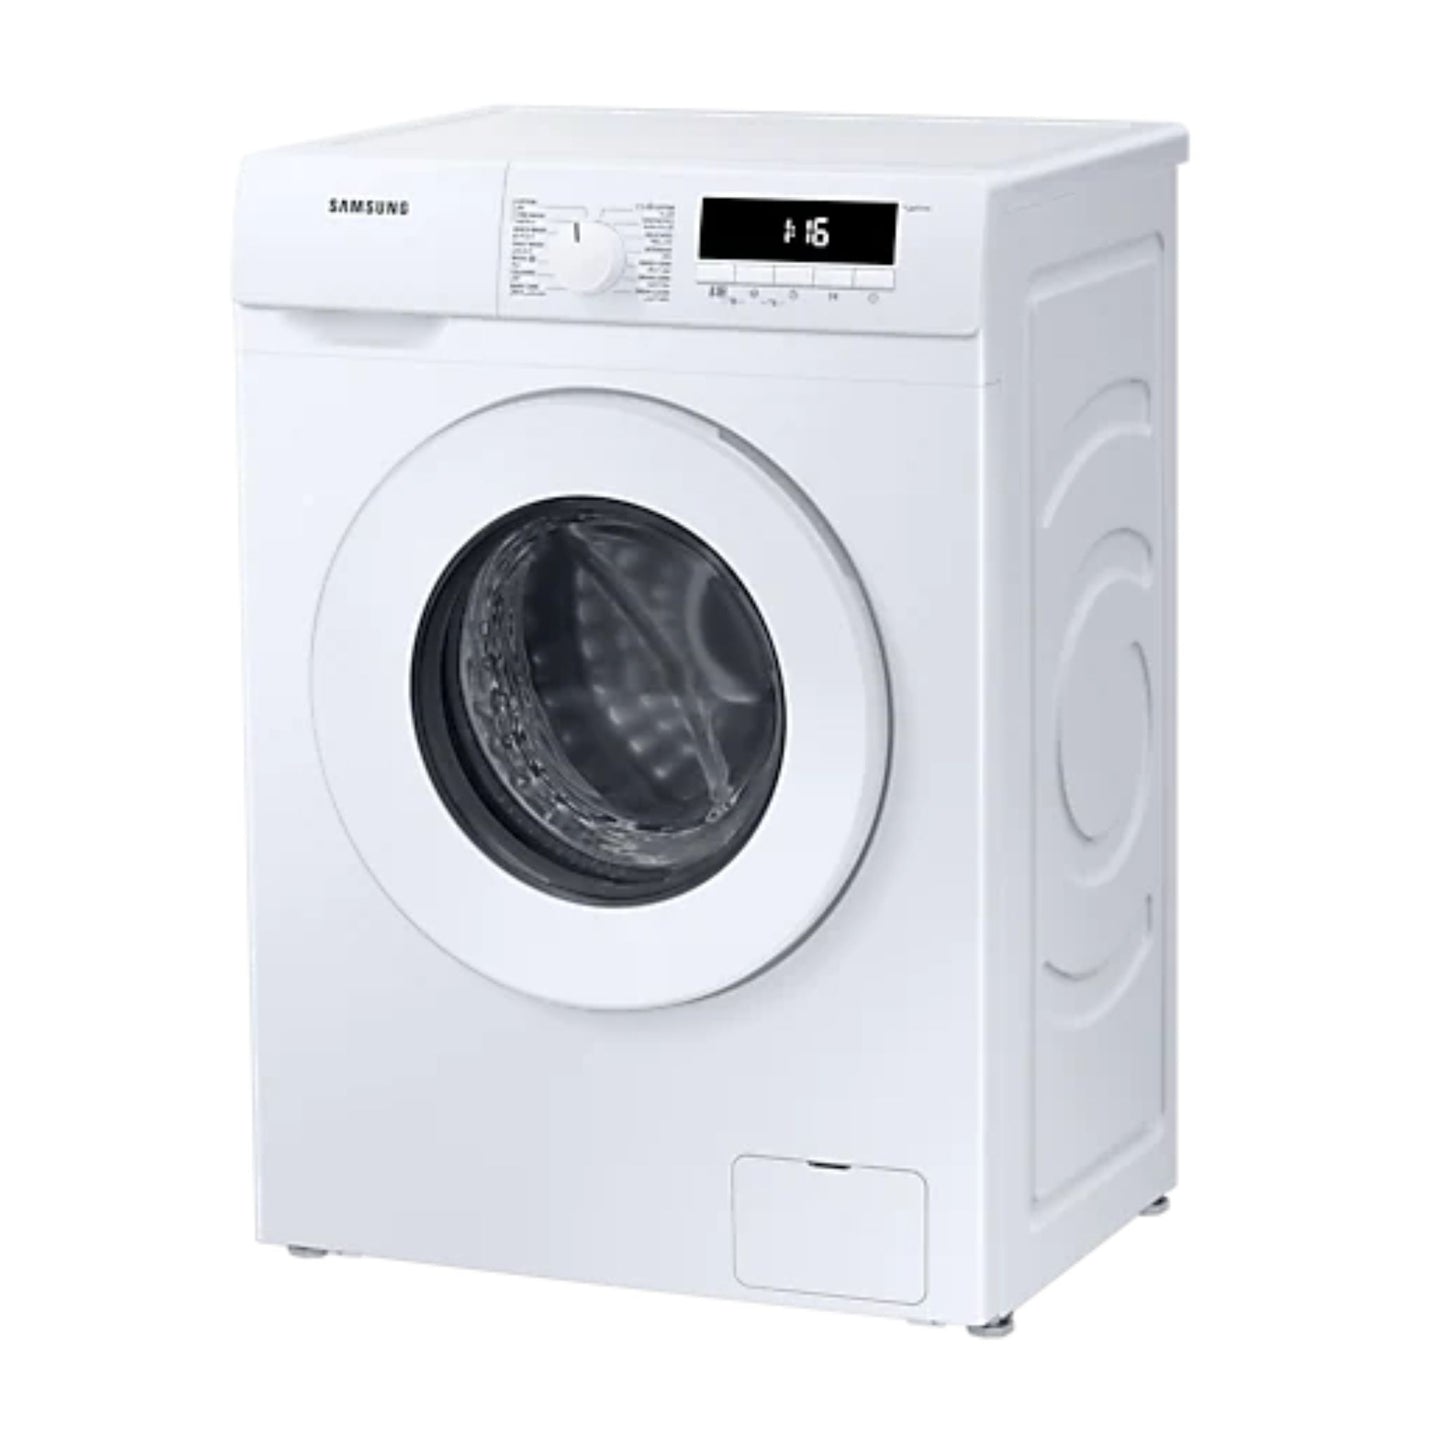 Samsung 7KG Fully Automatic Washing Machine, WW70T3020WW/GU